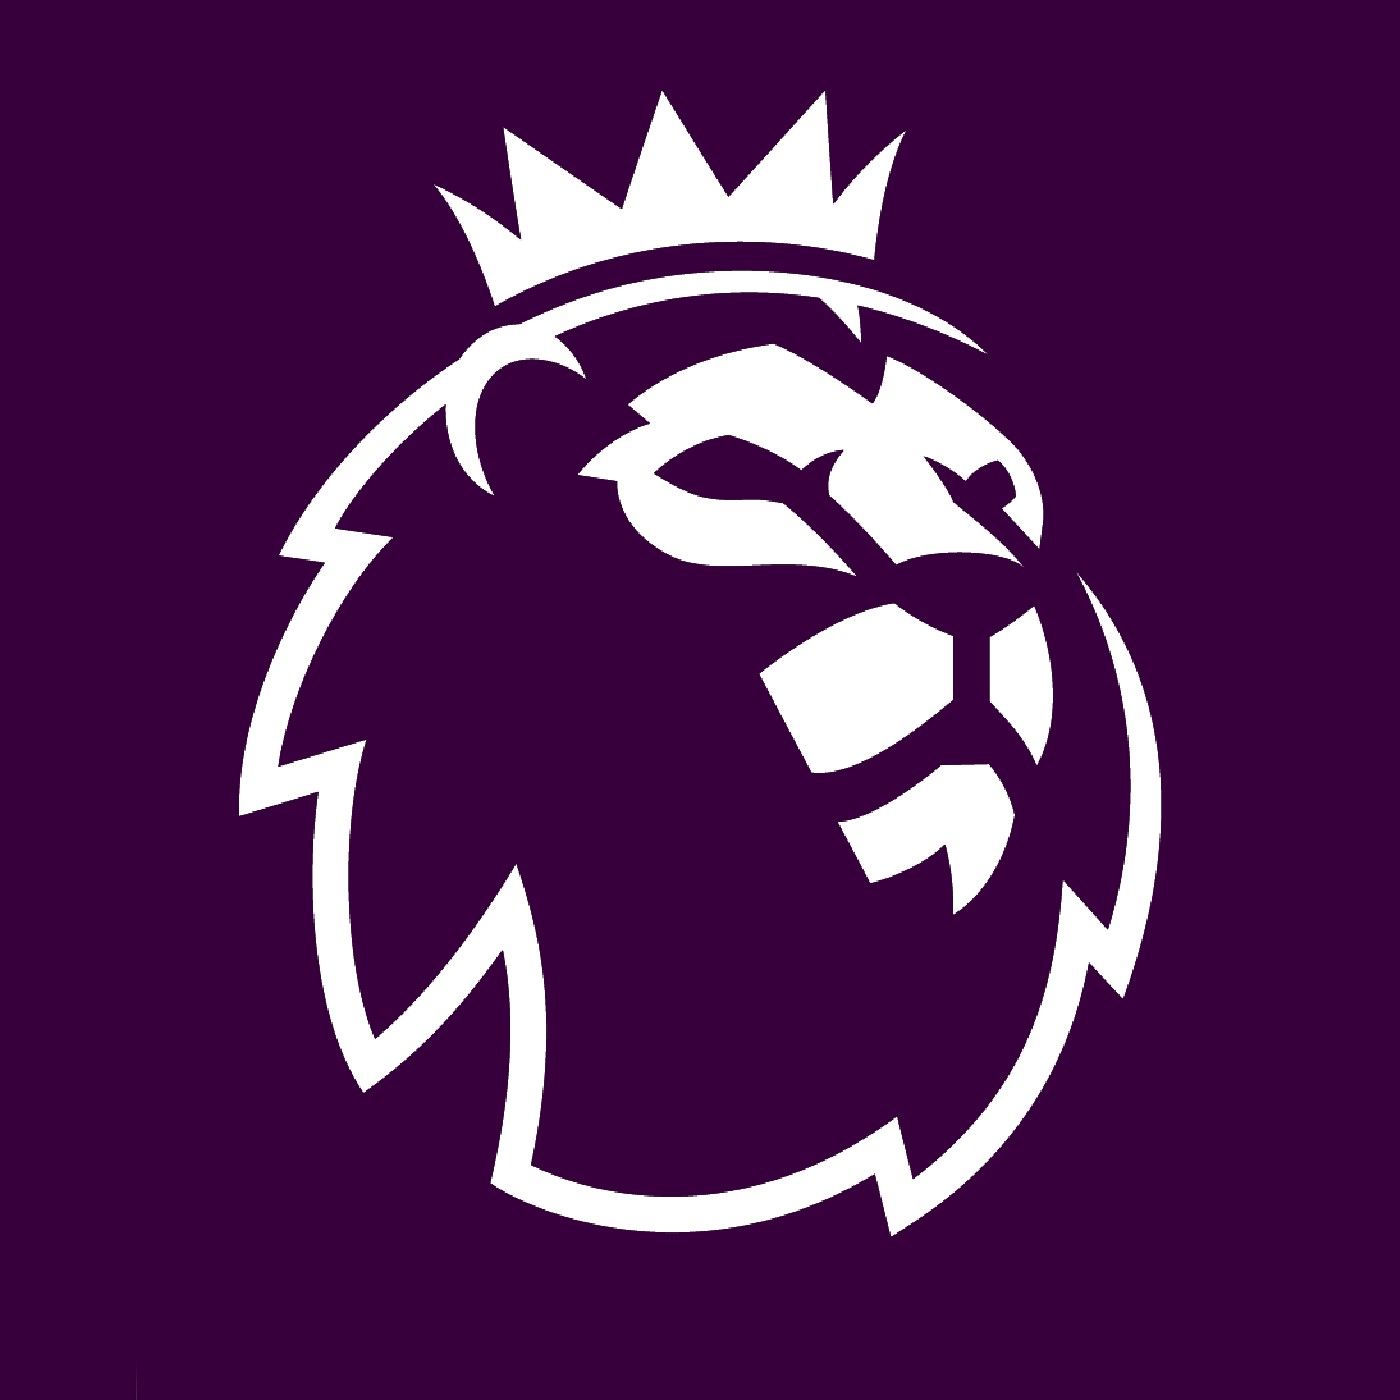 Episode 4 - The Premier League Podcast